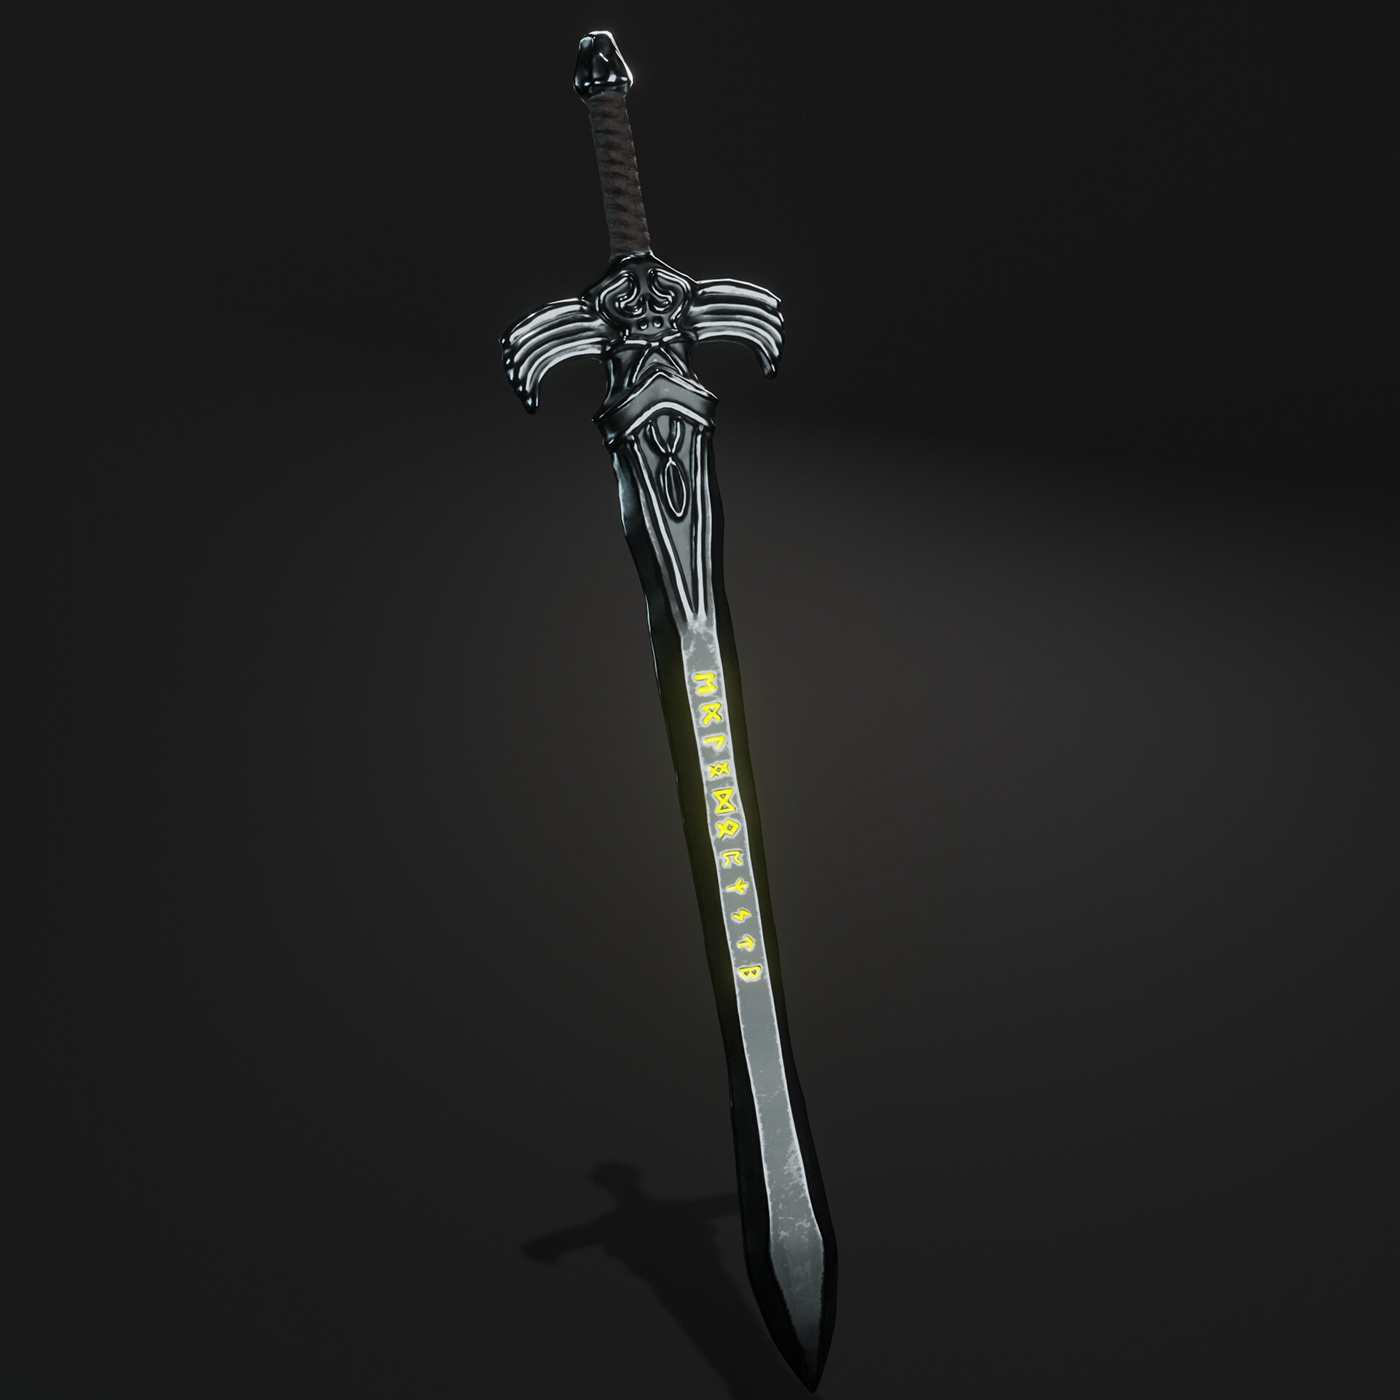 Weapon game Sword 3D 3dmodeling blender 3d modeling Render Low Poly